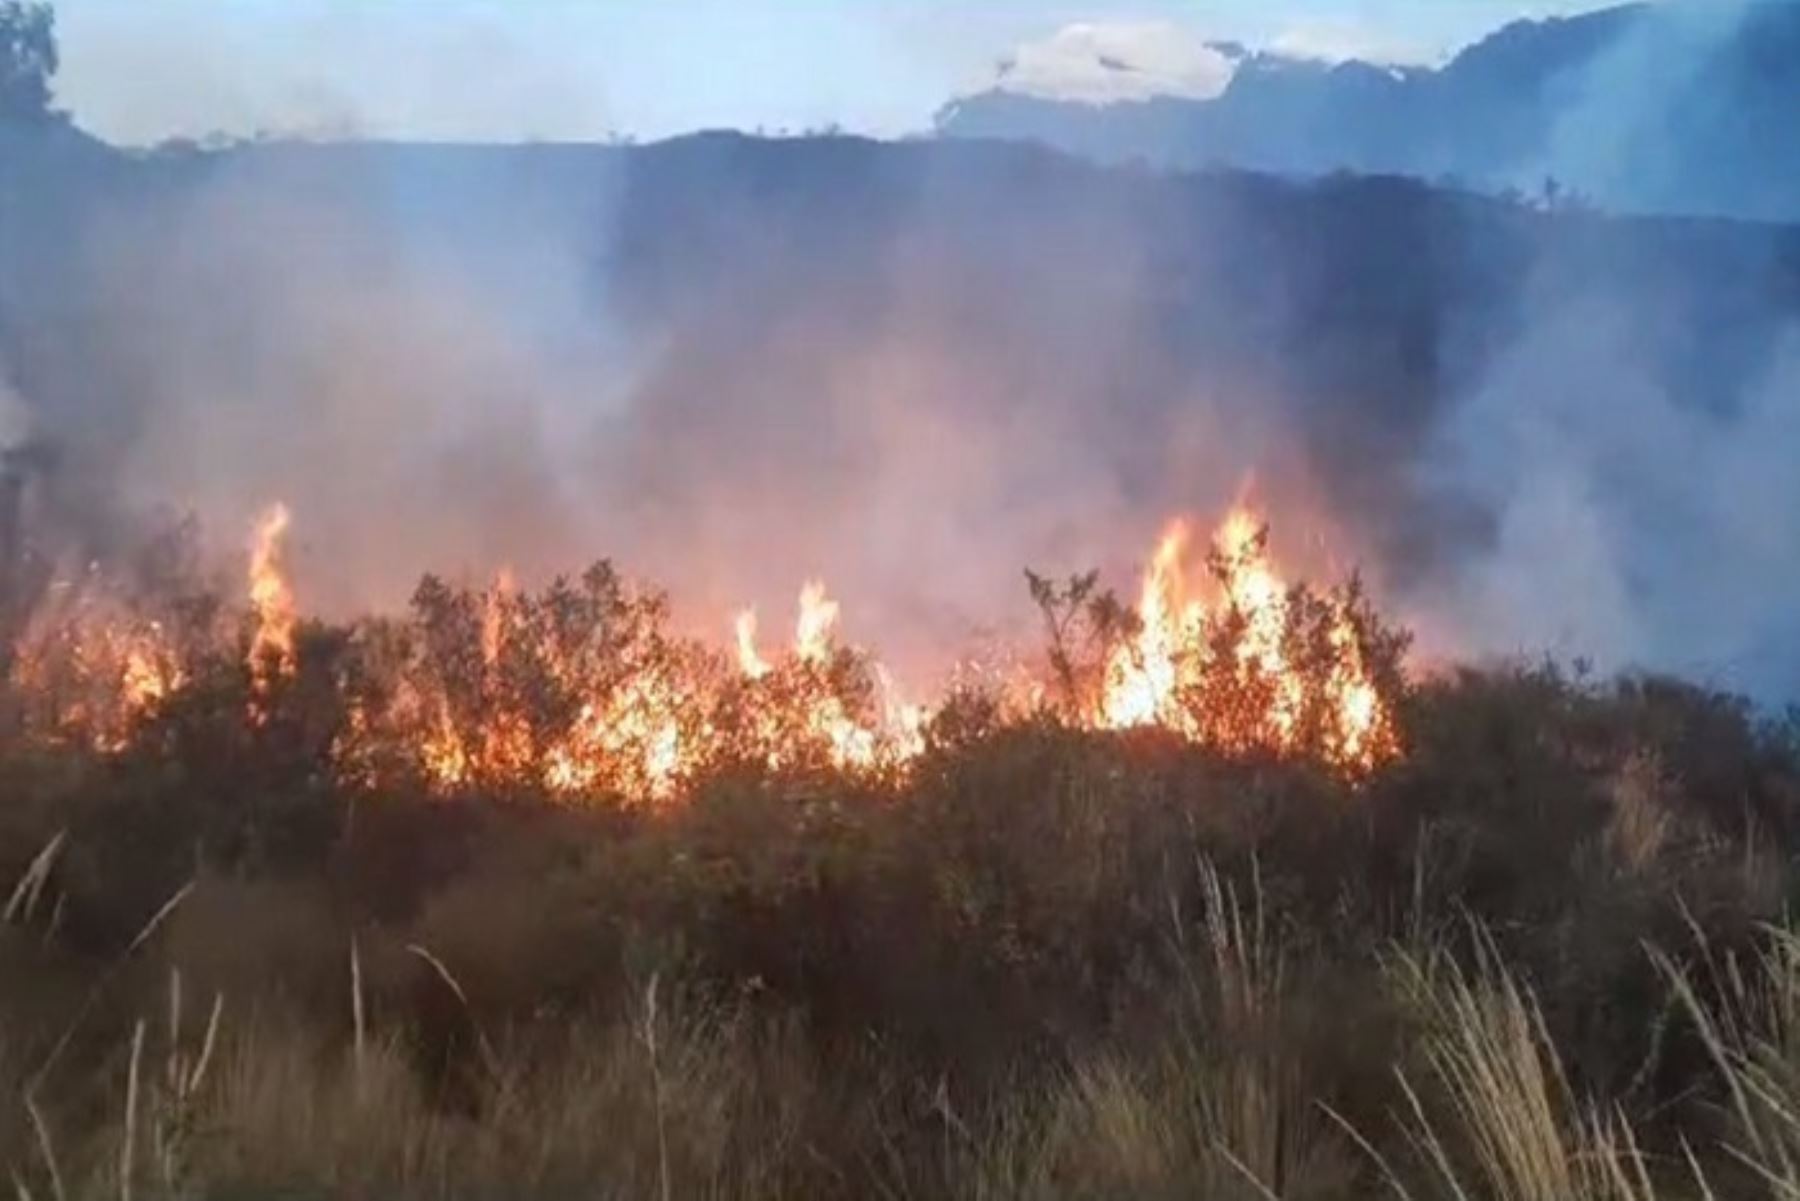 La zona afectada por el fuego se encuentra dentro del parque nacional Huascarán, uno de los principales atractivos turísticos de la sierra de Áncash. Foto: ANDINA/Archivo